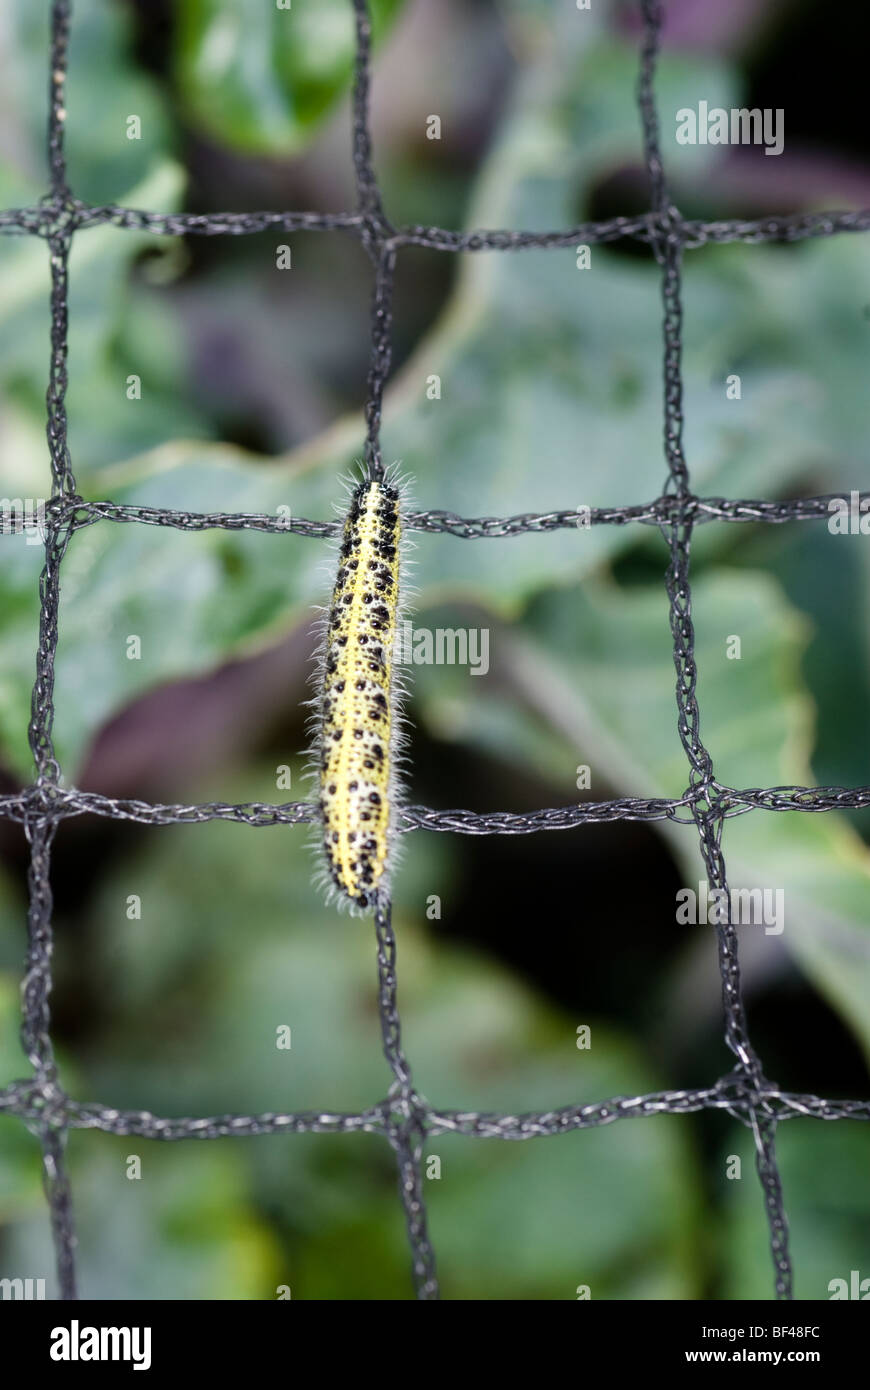 Caterpillar-Larven von der großen weißen Schmetterling kriecht auf eine schützende Garten net Stockfoto